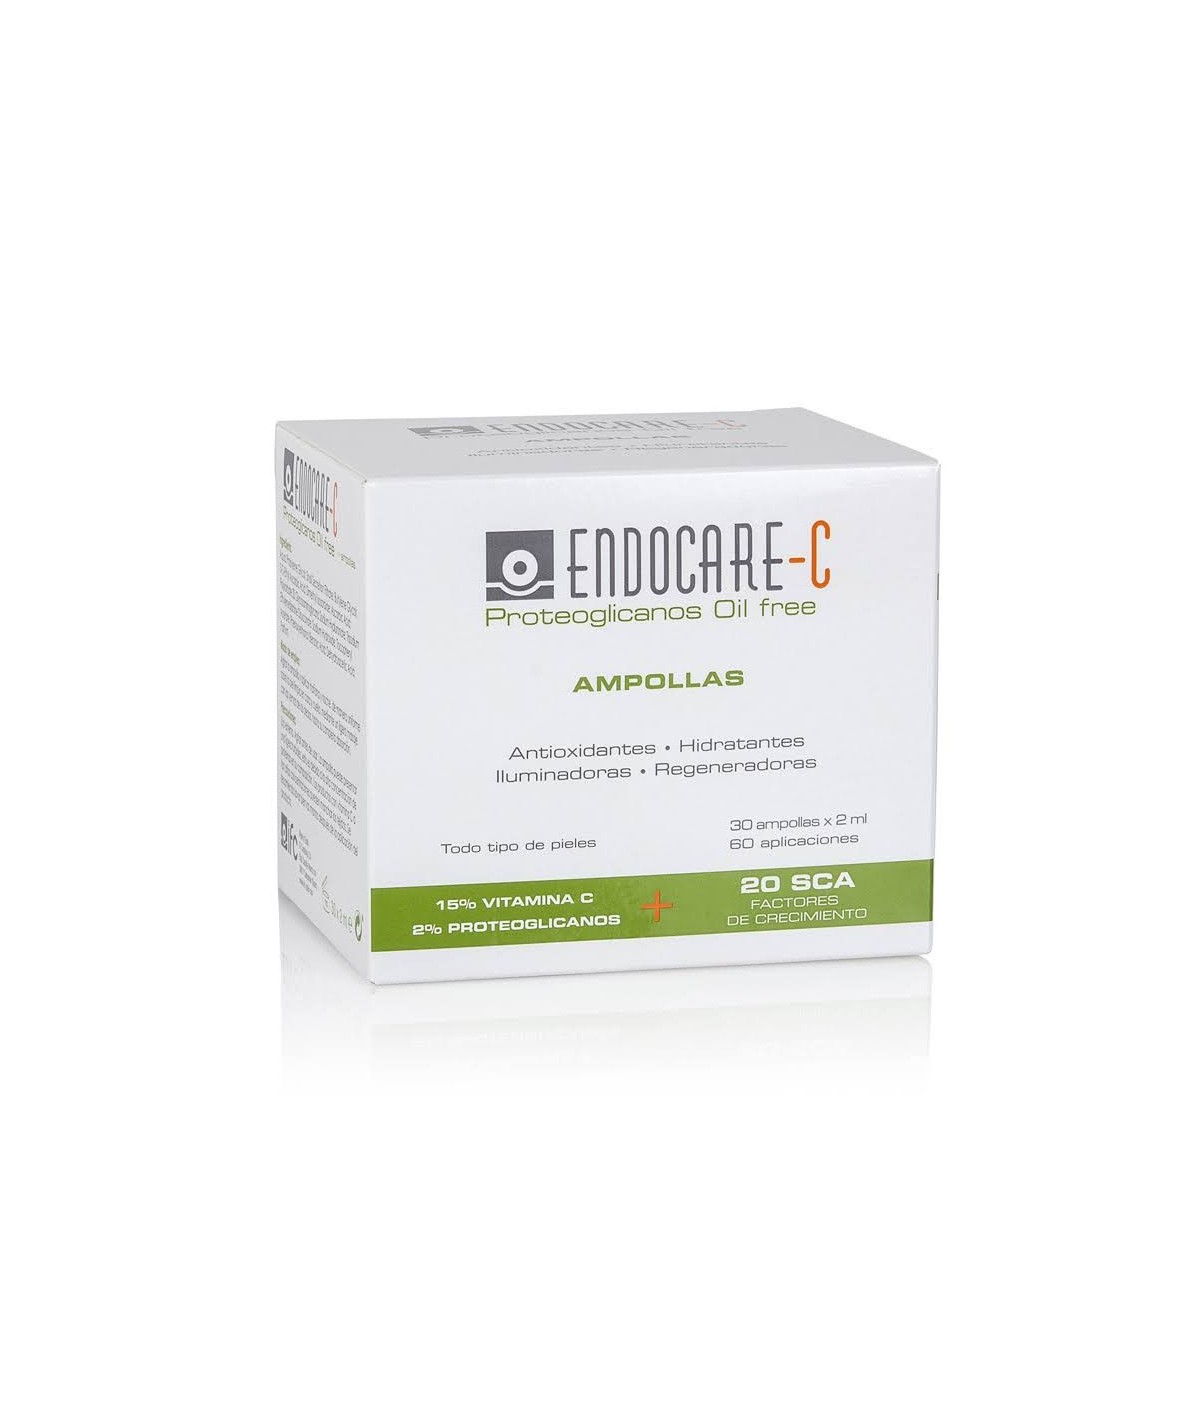 Endocare C Proteoglicanos Oil Free 2ml x 30 Ampollas